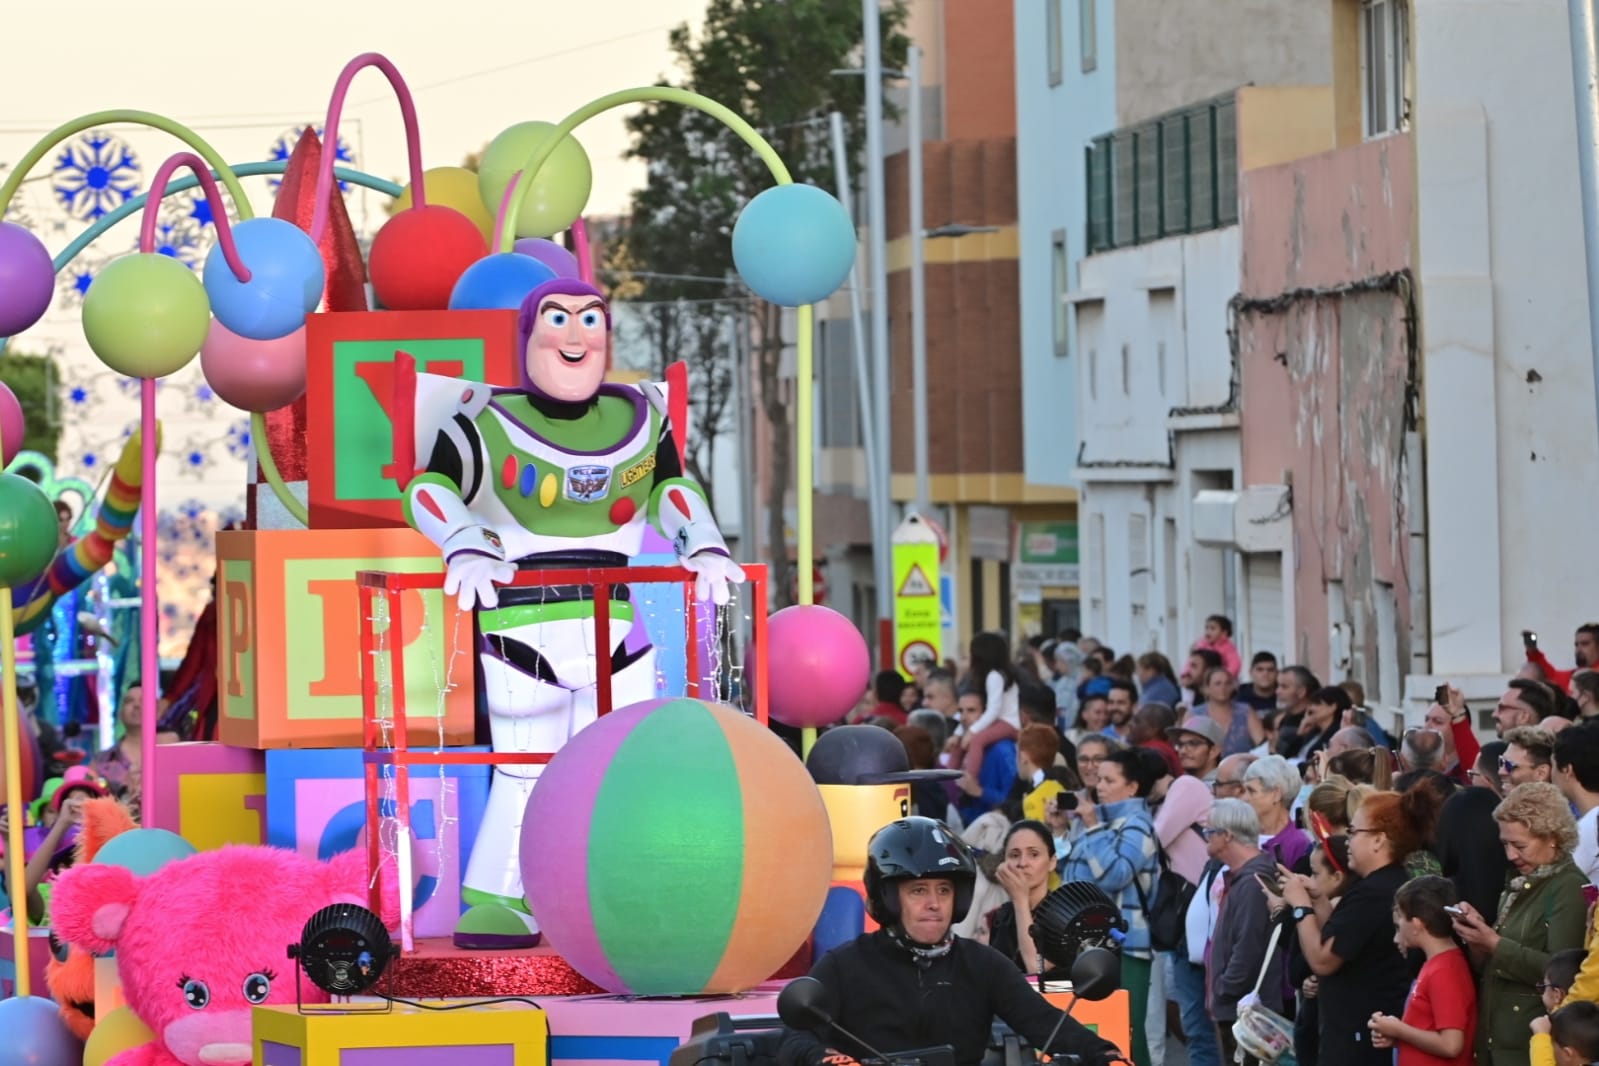 Imagen secundaria 1 - Los Reyes Magos recorren Vecindario ante miles de personas